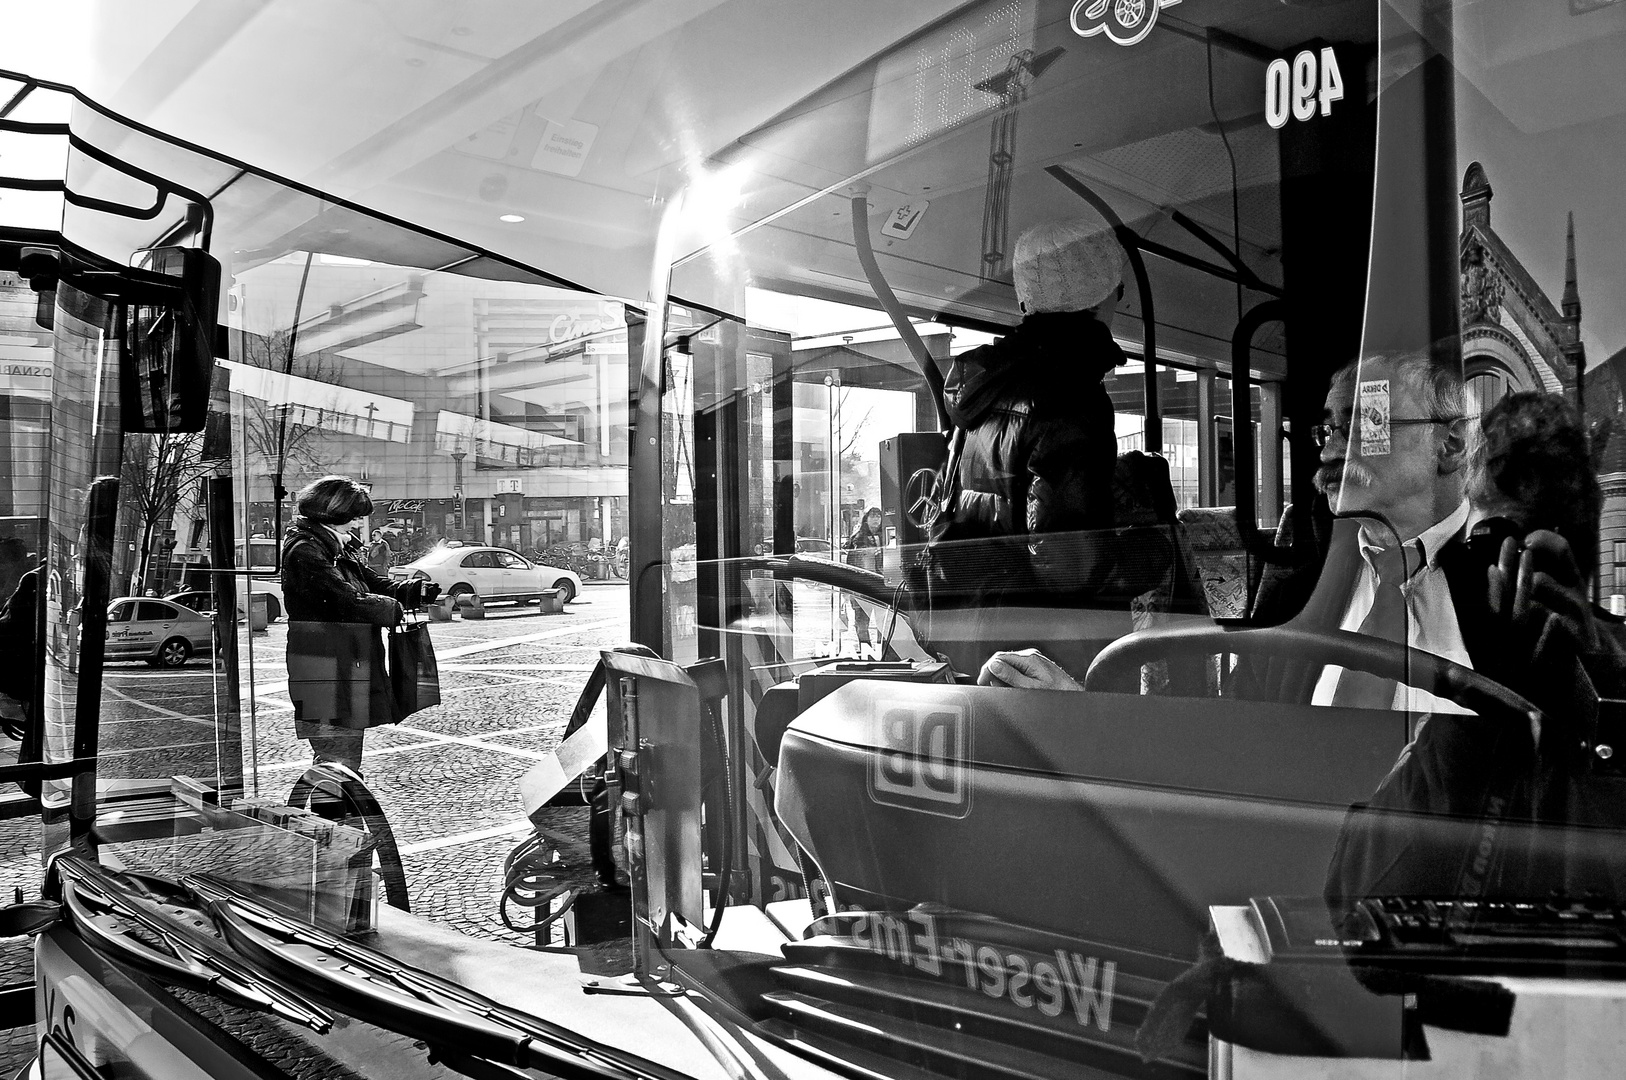 Bus-Spiegelungen